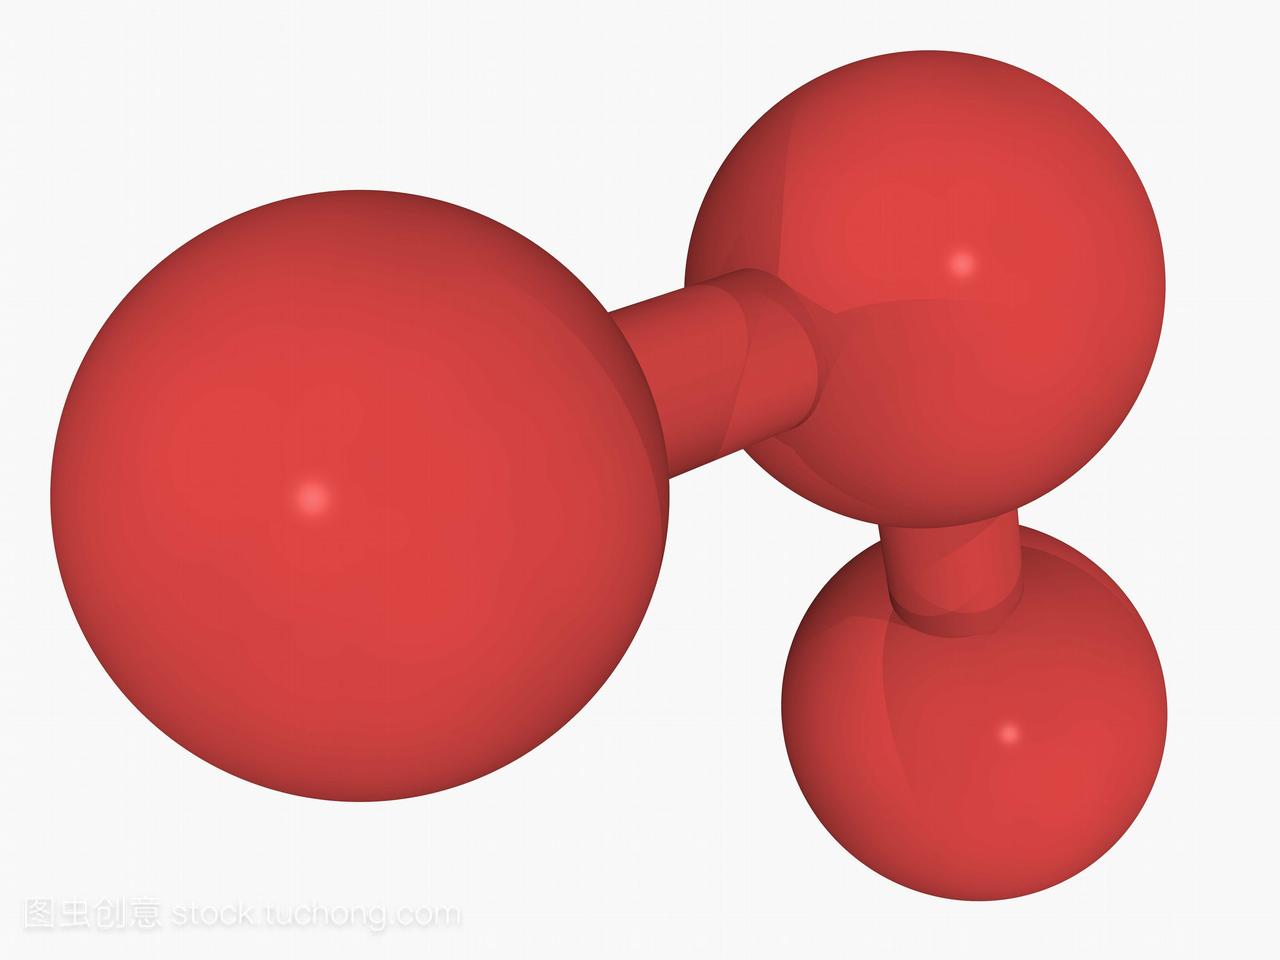 臭氧分子模型。由三个氧原子组成的三原子分子